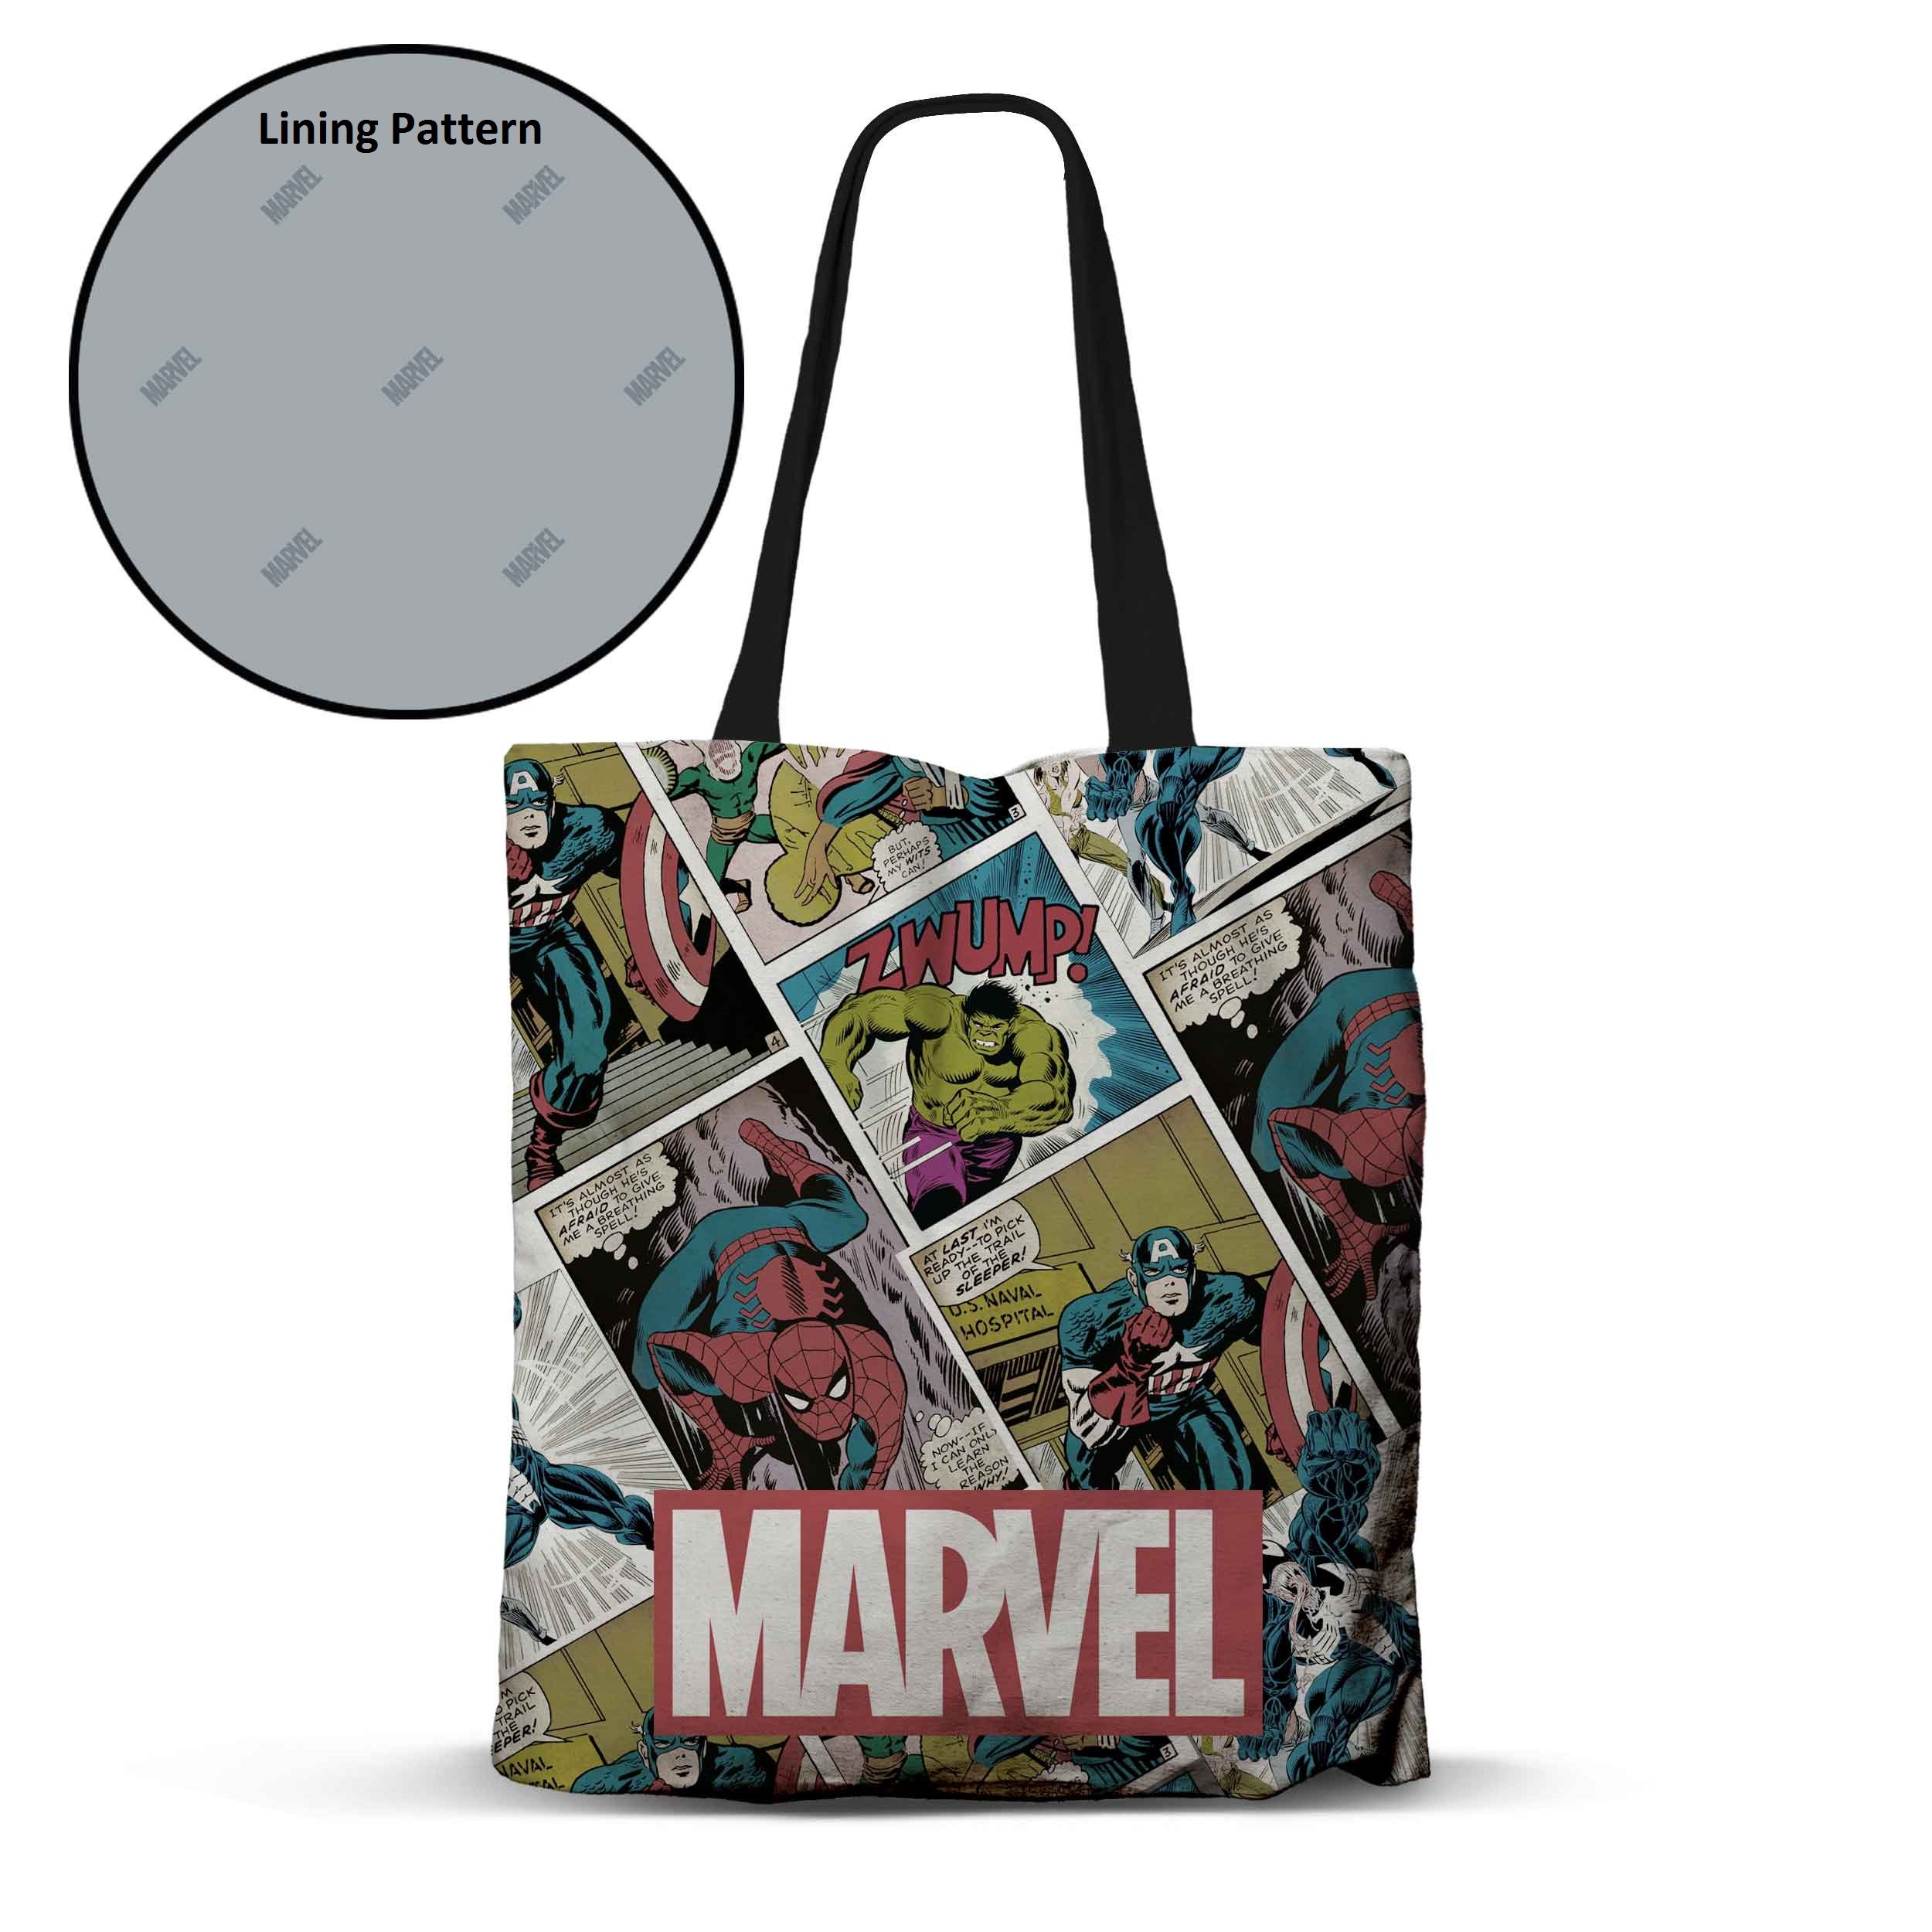 MARVEL - Comics - Special Edition - Premium Tote Bag 40x33cm